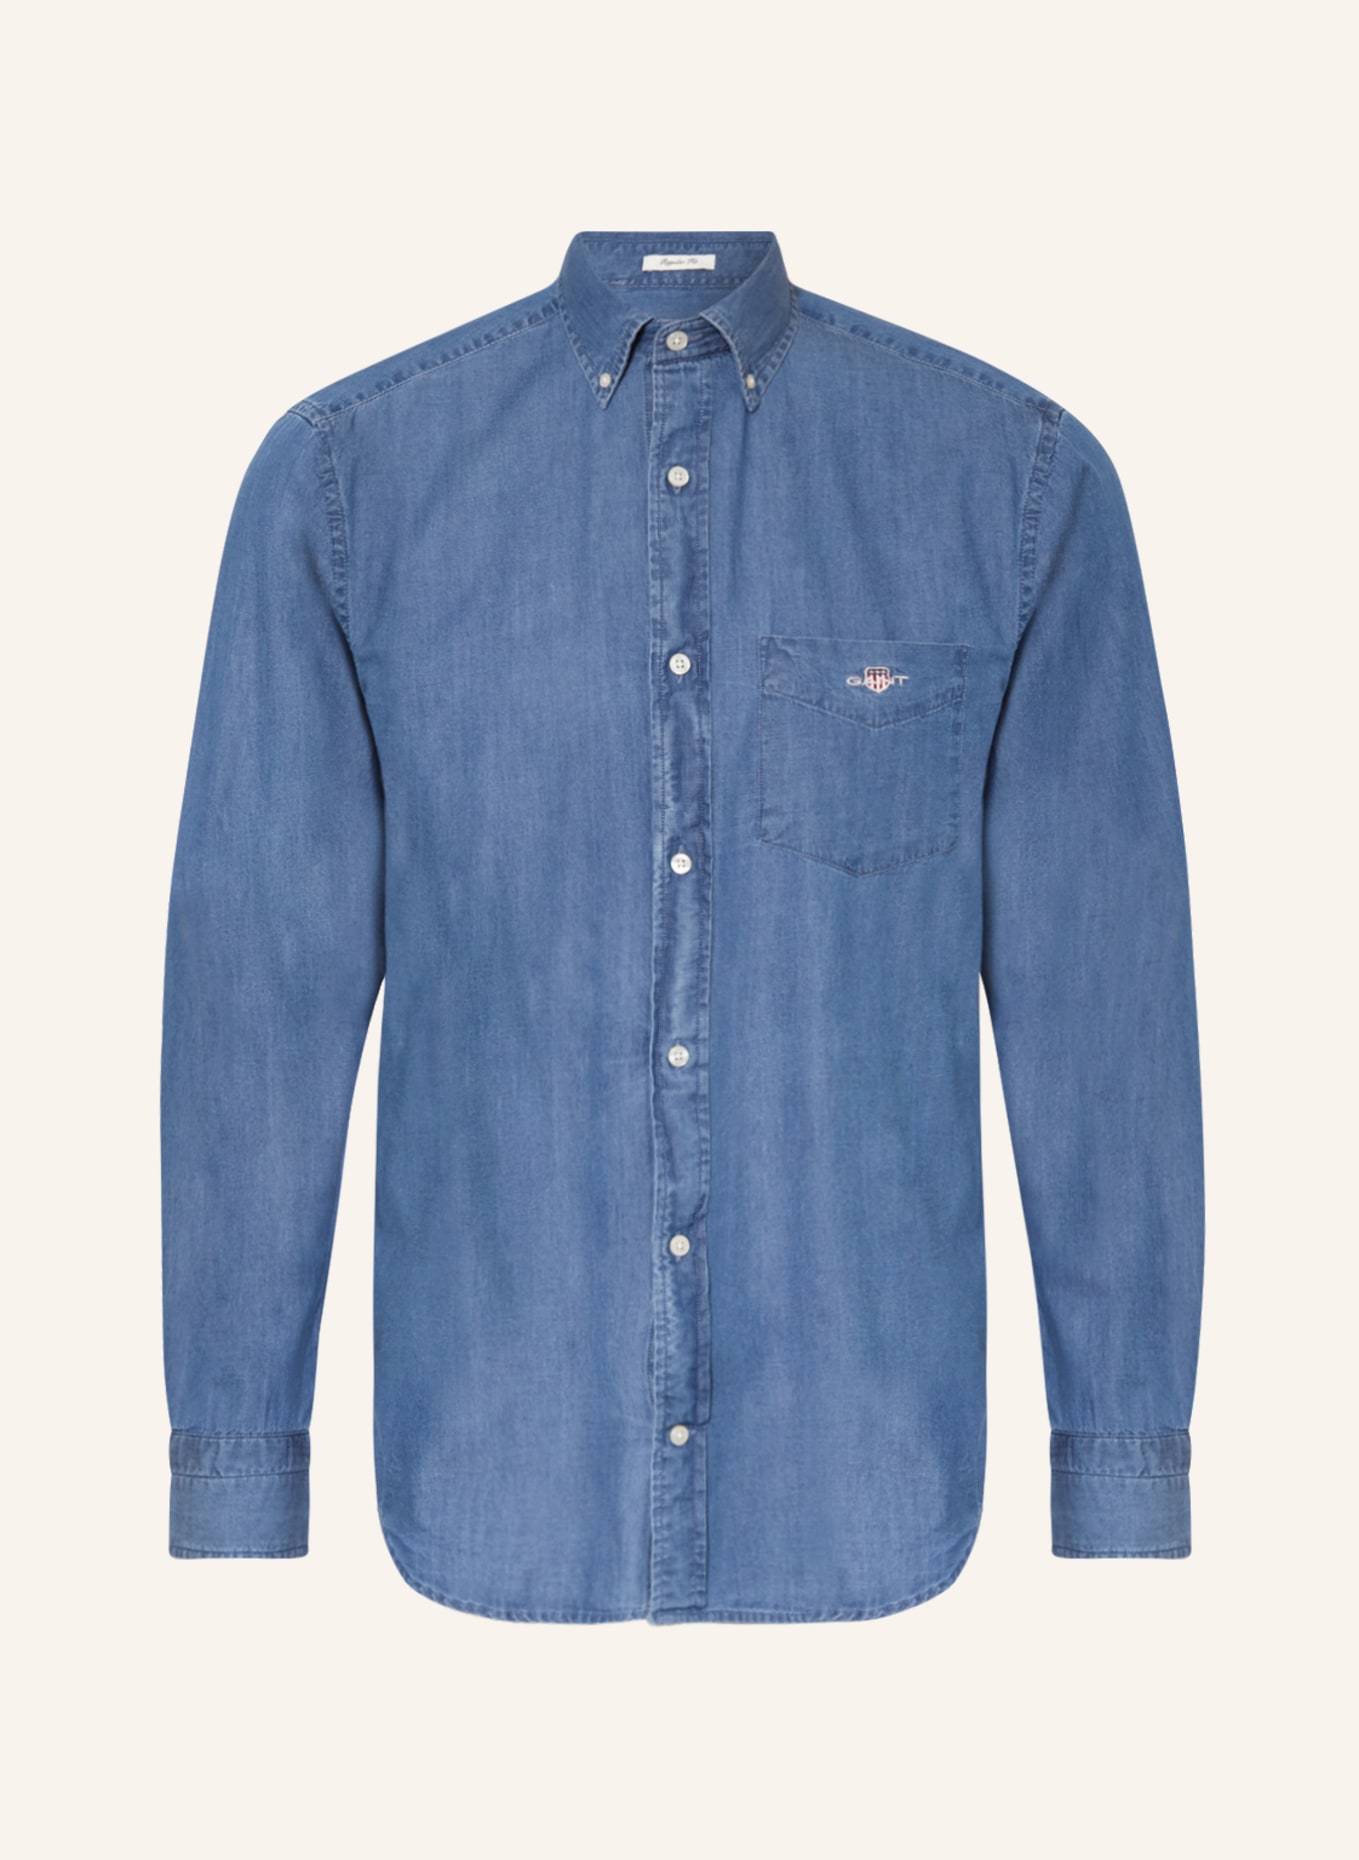 GANT Shirt regular fit in denim look, Color: BLUE (Image 1)